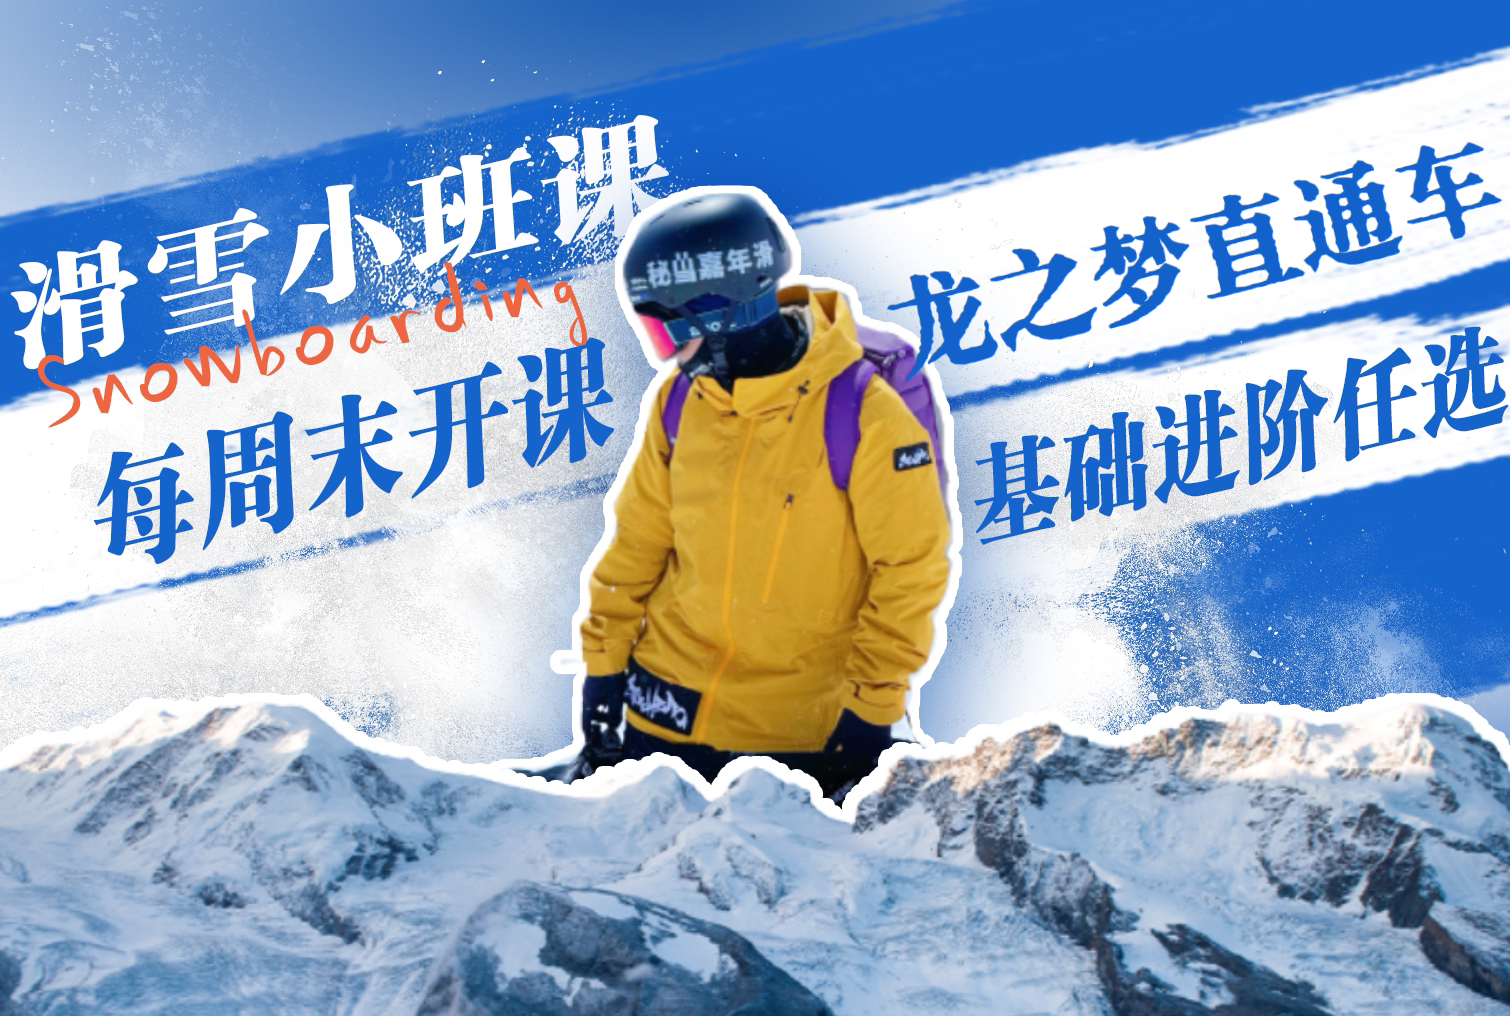 【直通车】6月1日 | 太湖·龙之梦冰雪世界一日班车  上海-太湖